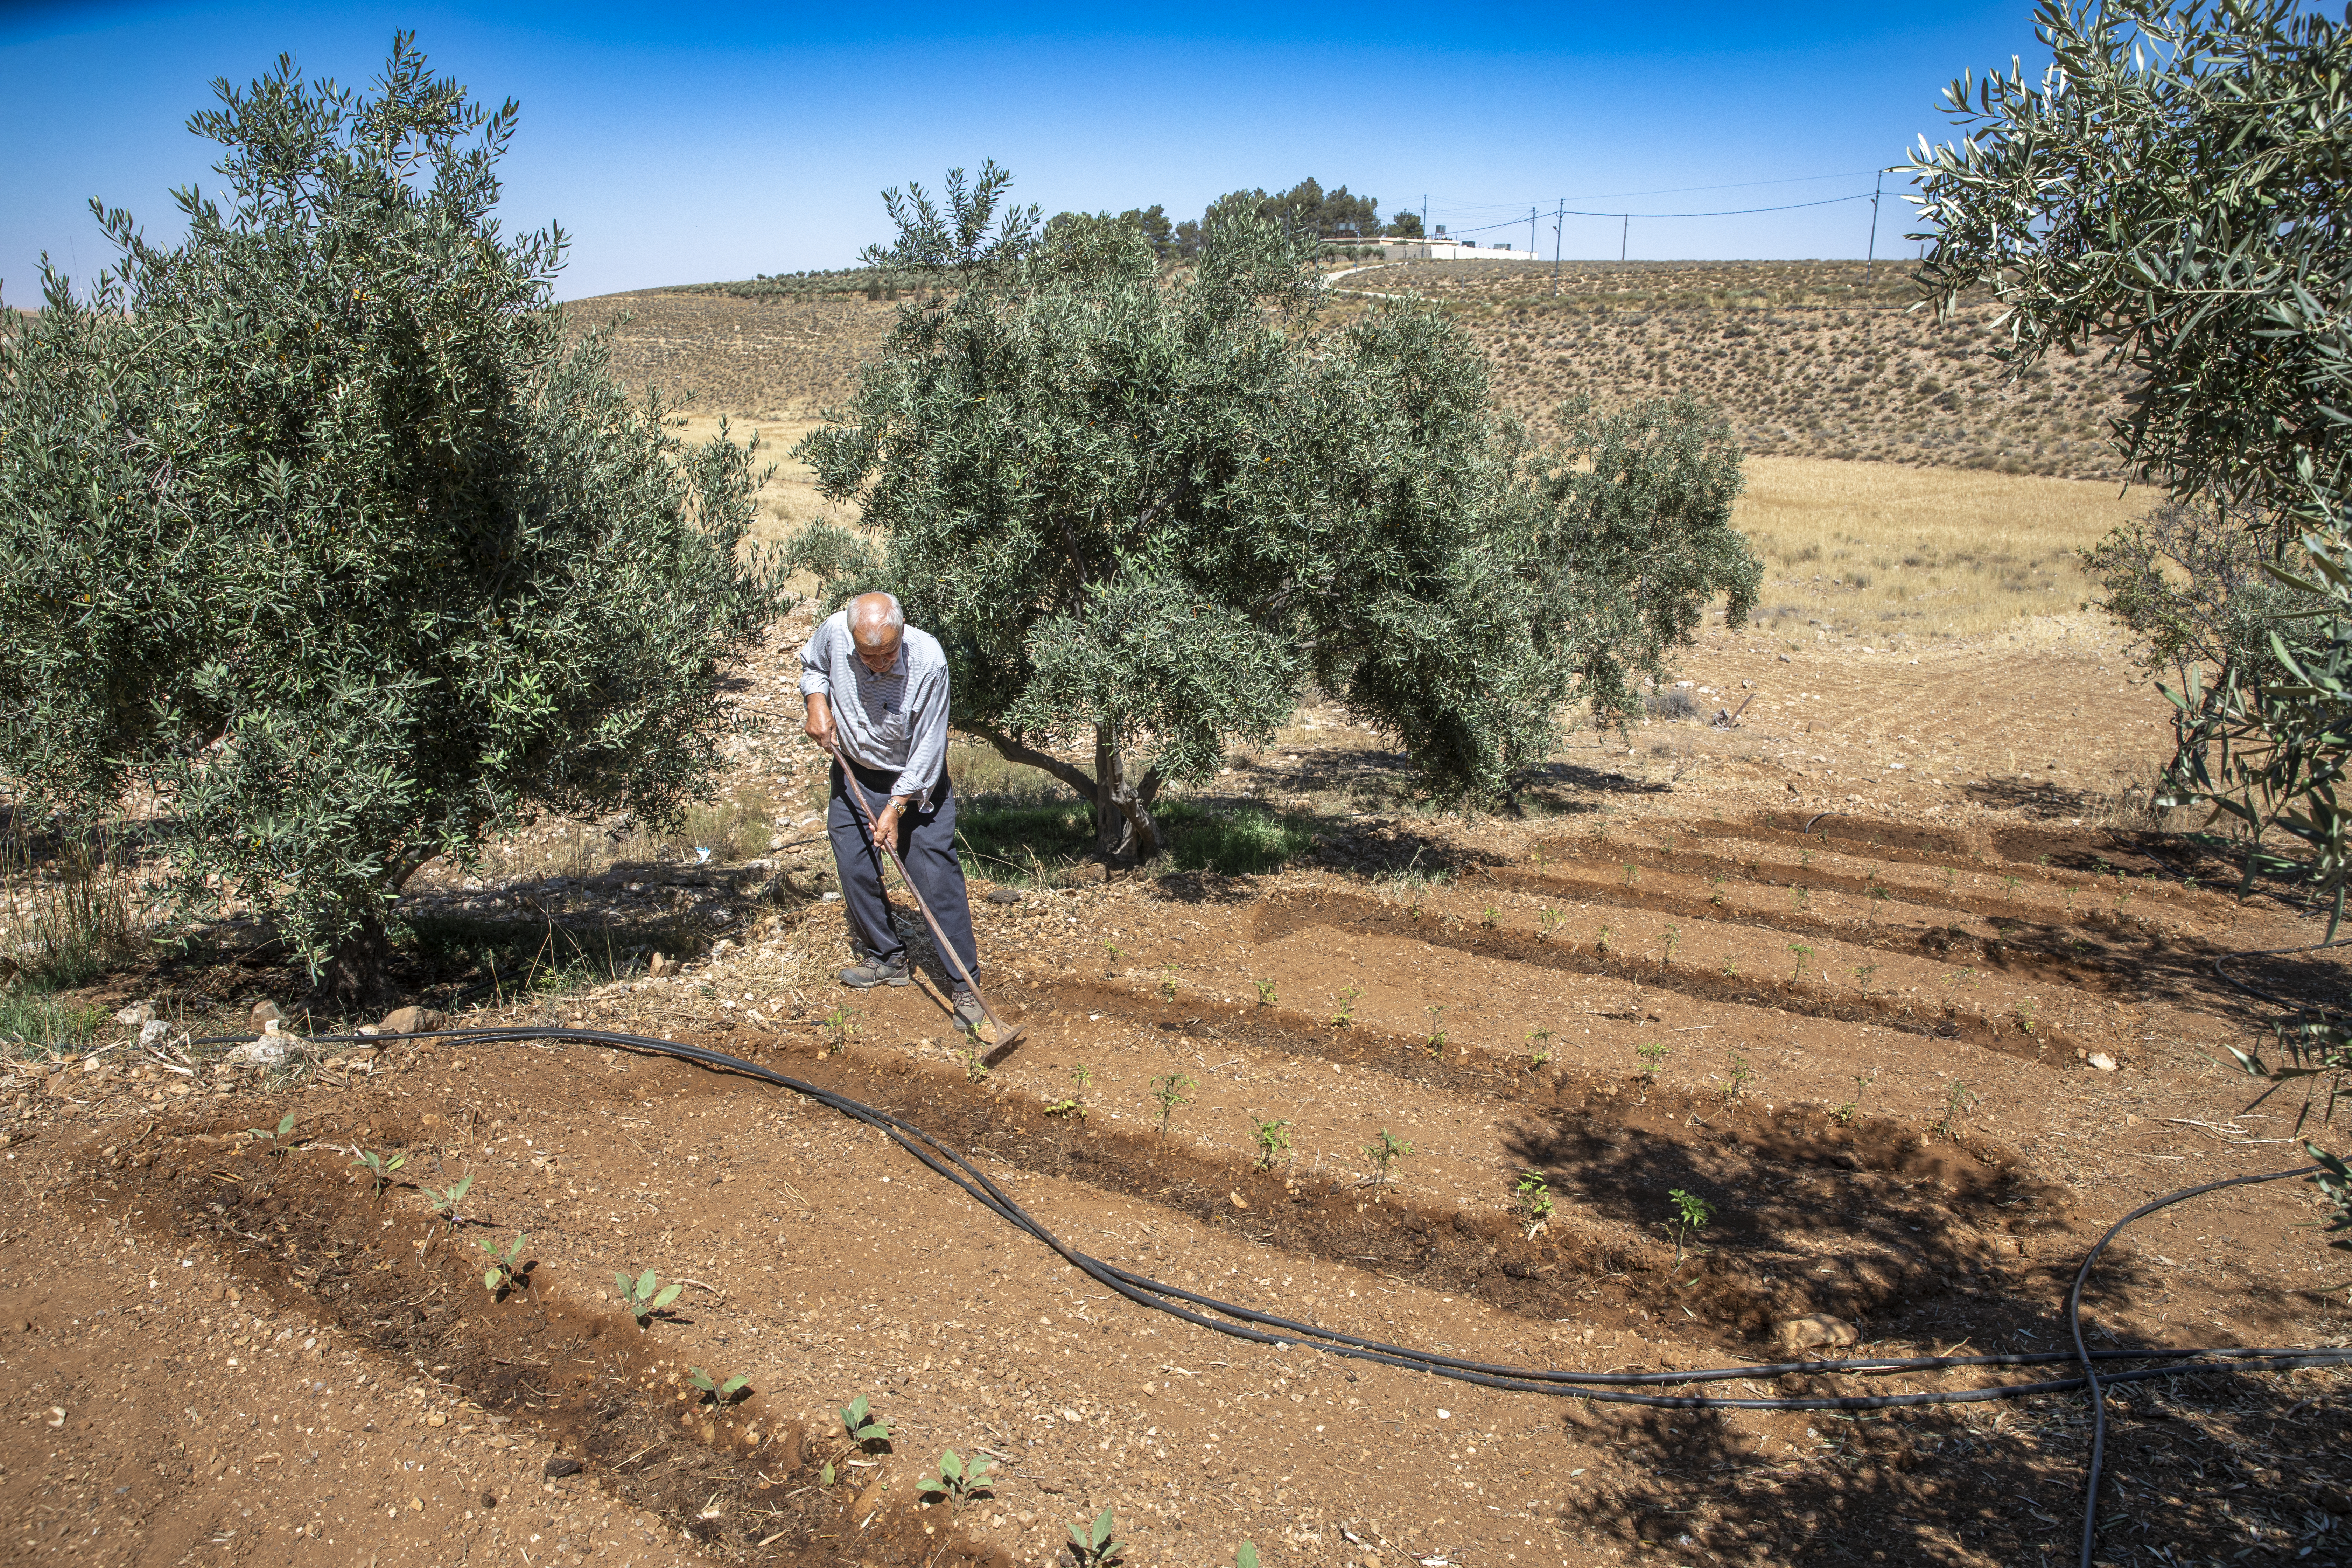 حصل محمود حباحبة، 77 عاماً، أحد المشاركين في برنامج ميرسي كور، على منحة لتحسين تقنياته في الزراعة، بما في ذلك إصلاح مضخة المياه التي يمتلكها. يعمل ه حباحبة نا في حقله لزراعة الطماطم بنظام الري الجديد.